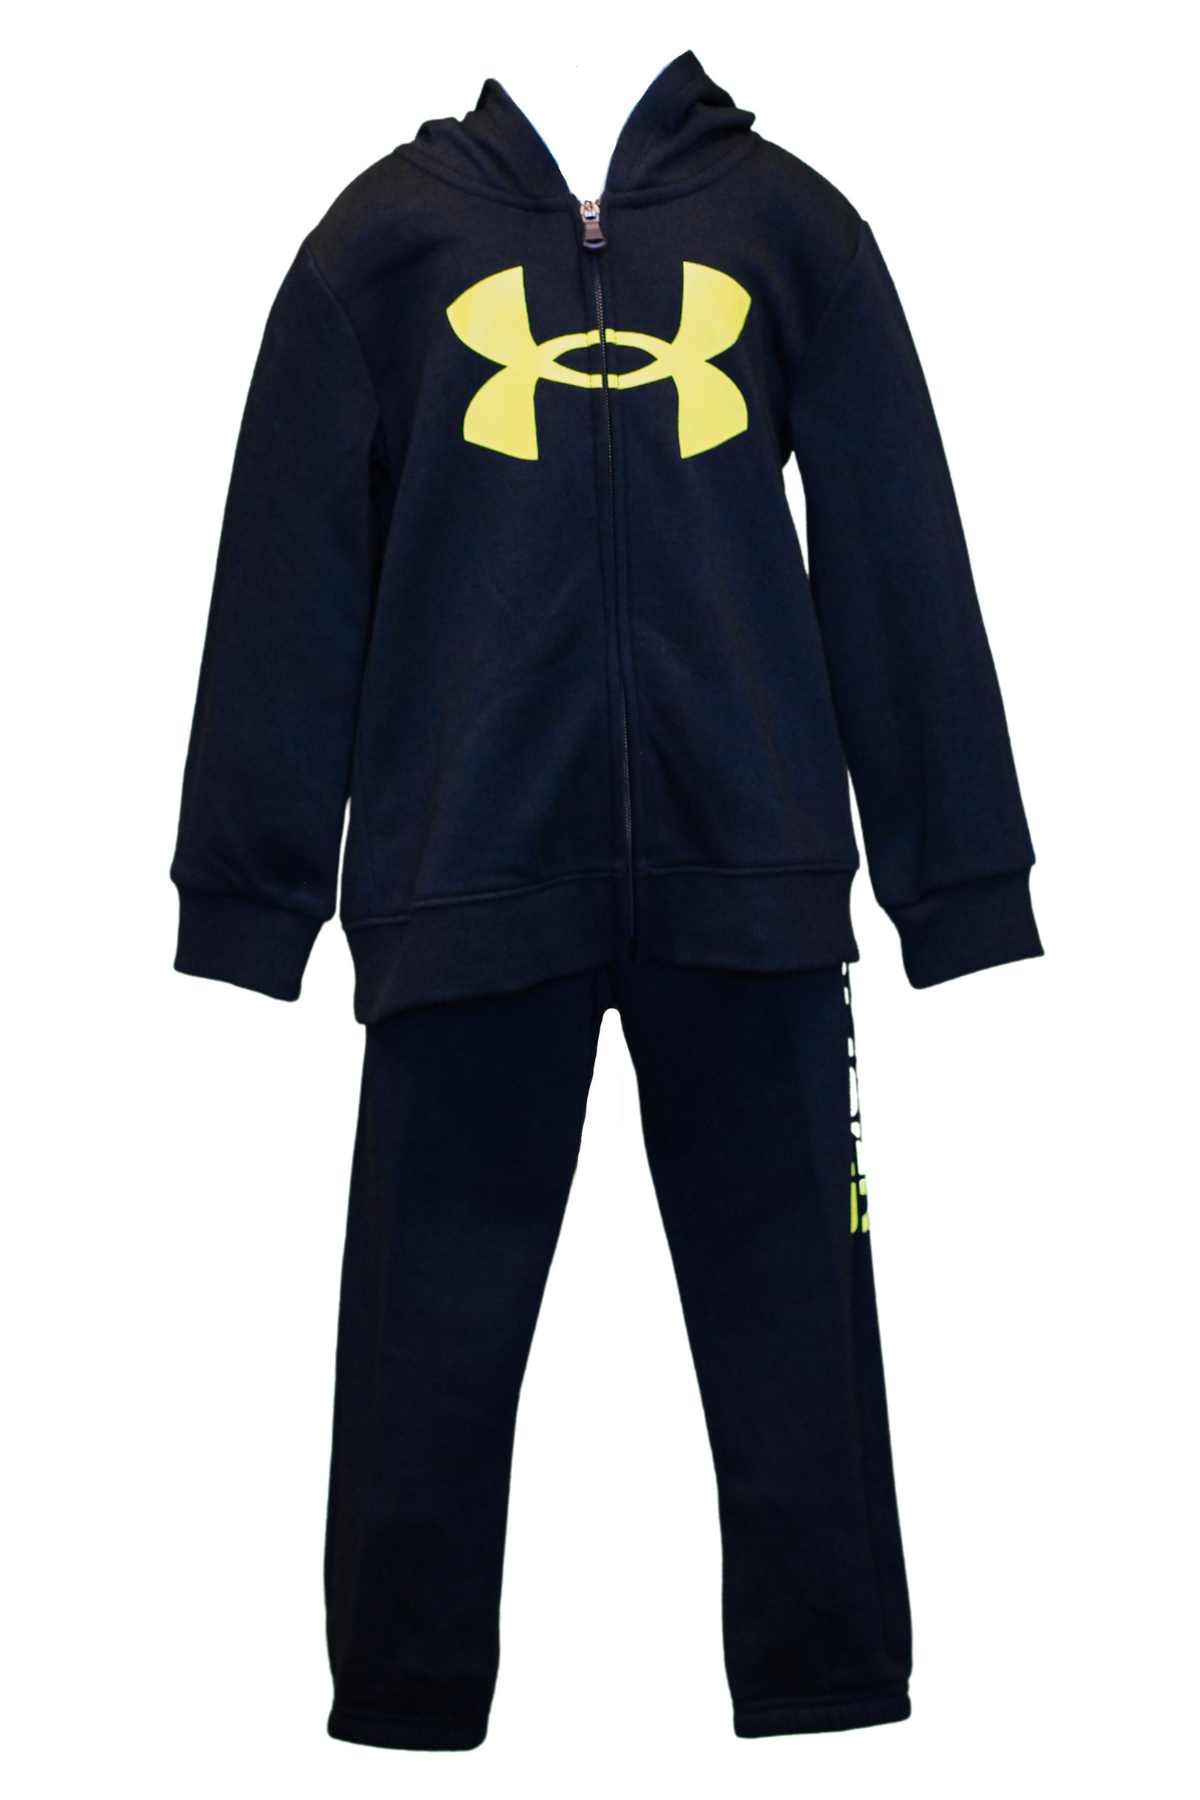 Boys Toddler-Youth Black Yellow UA Jacket Set